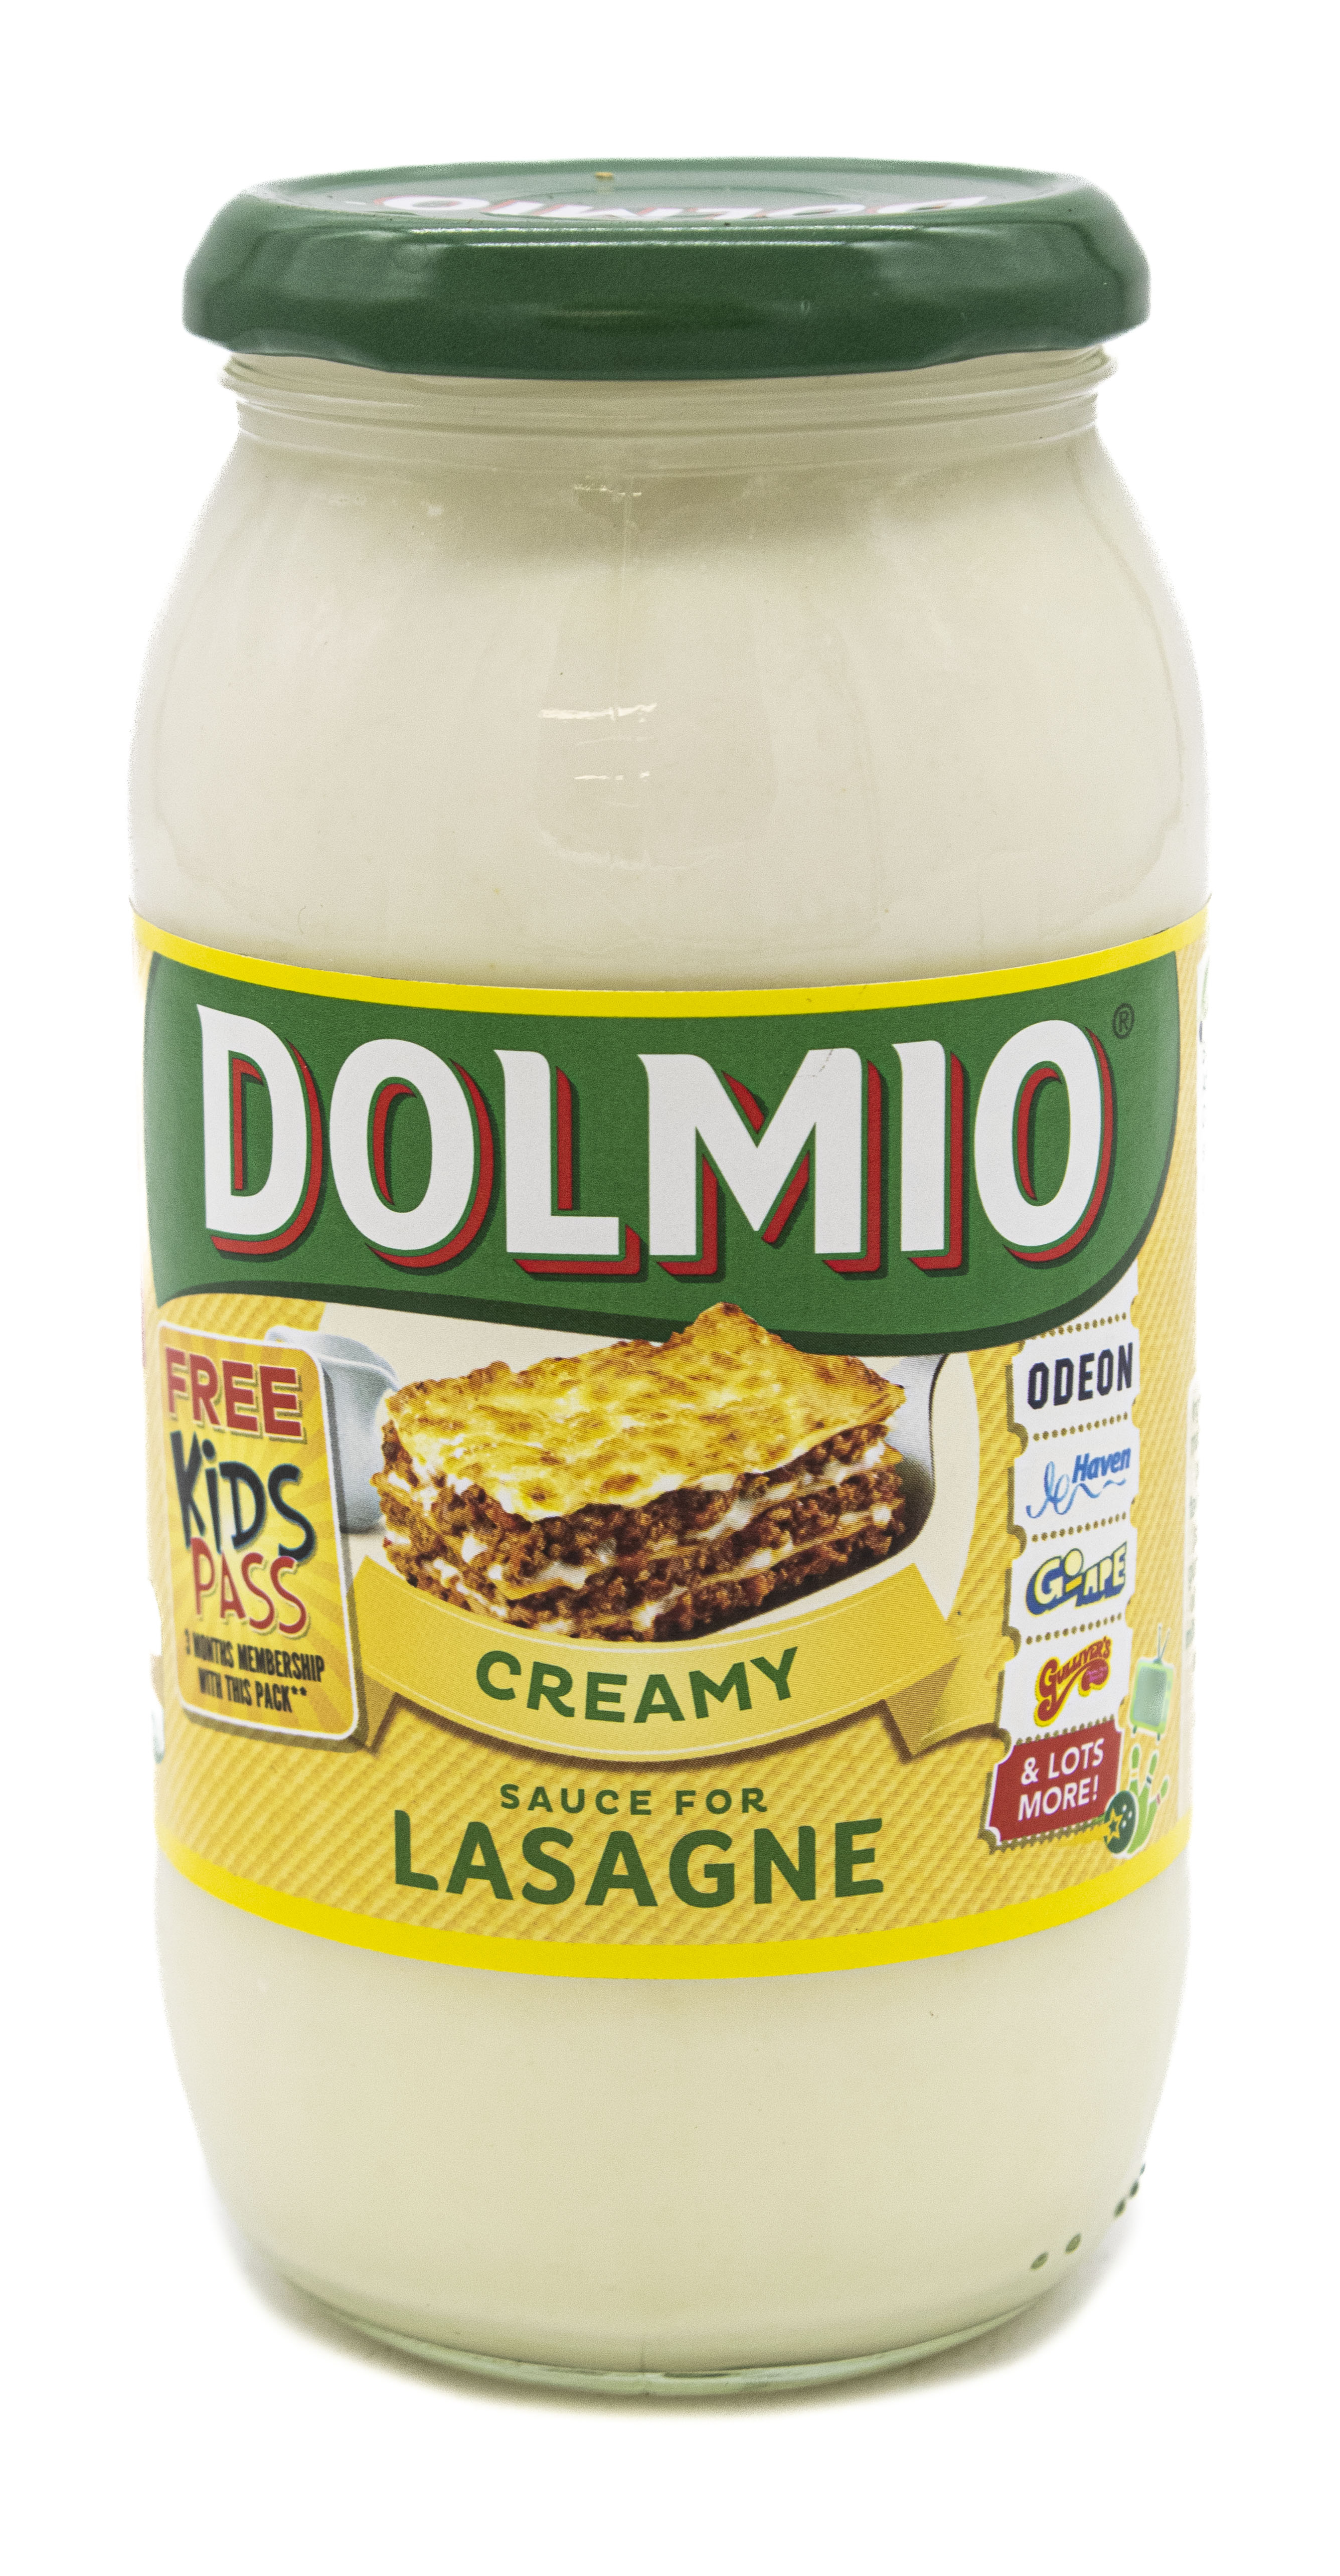 Dolmio Lasagne Creamy White Sauce 470g, 470 g from Dolmio | Motatos